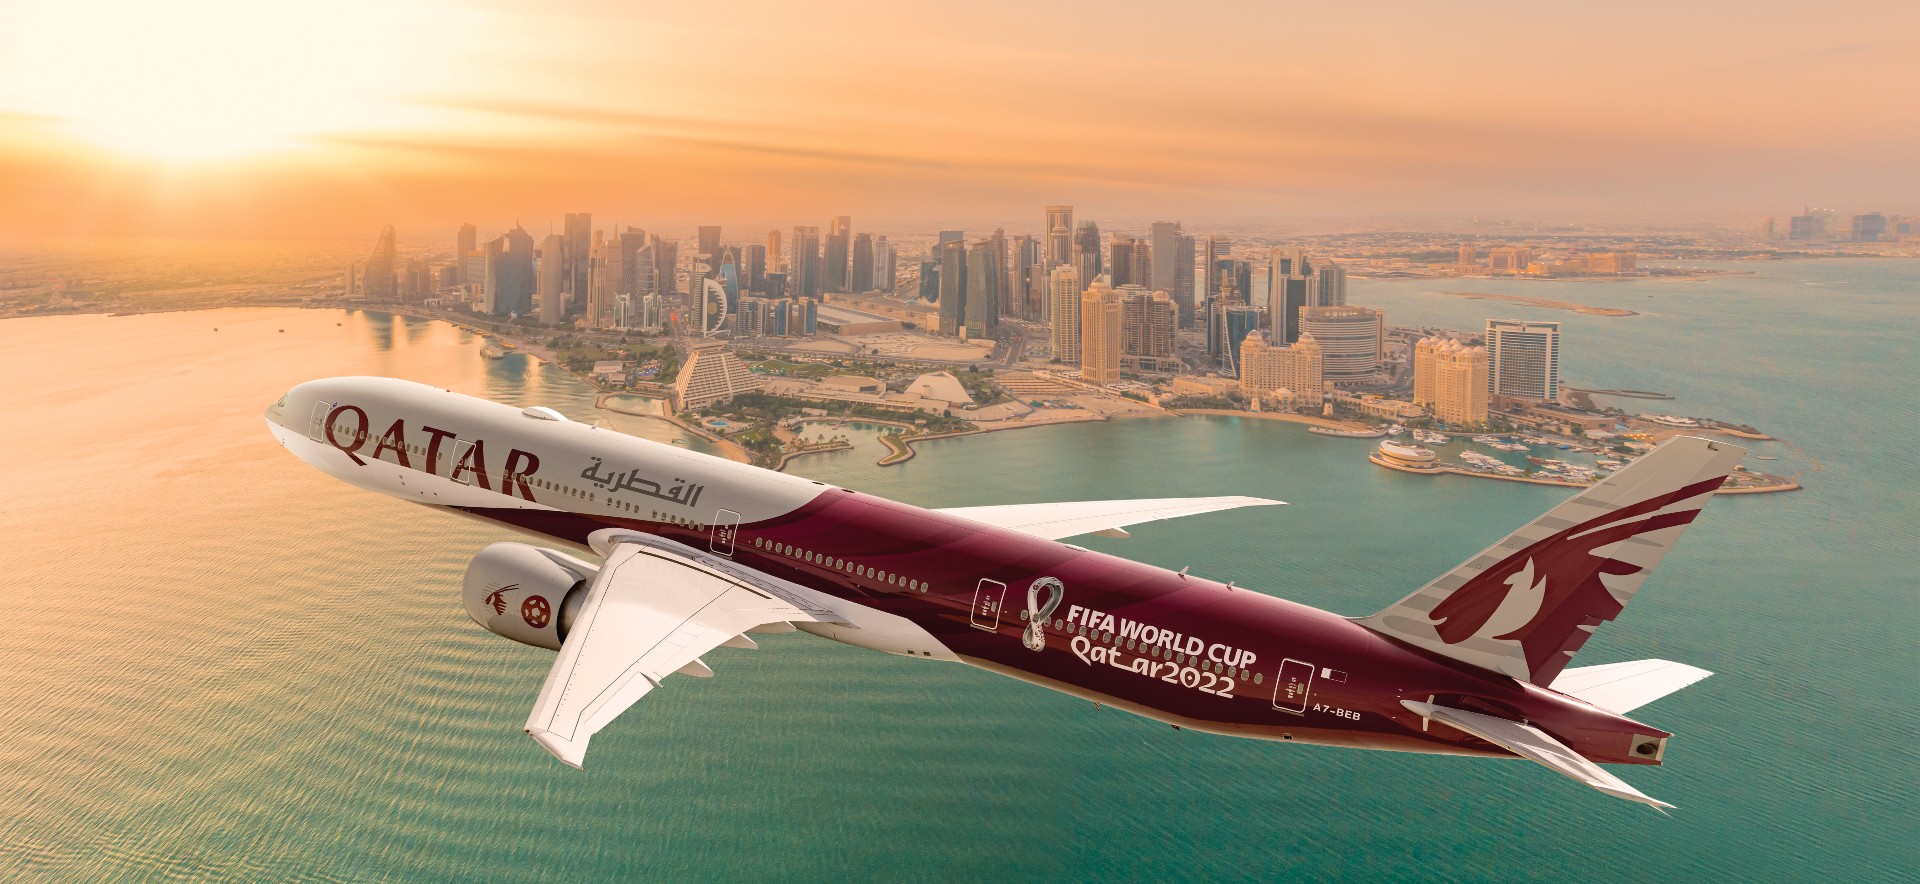 Compania aeriană Qatar Airways vrea să investească aproape 300 de milioane de euro la Aeroportul Timișoara